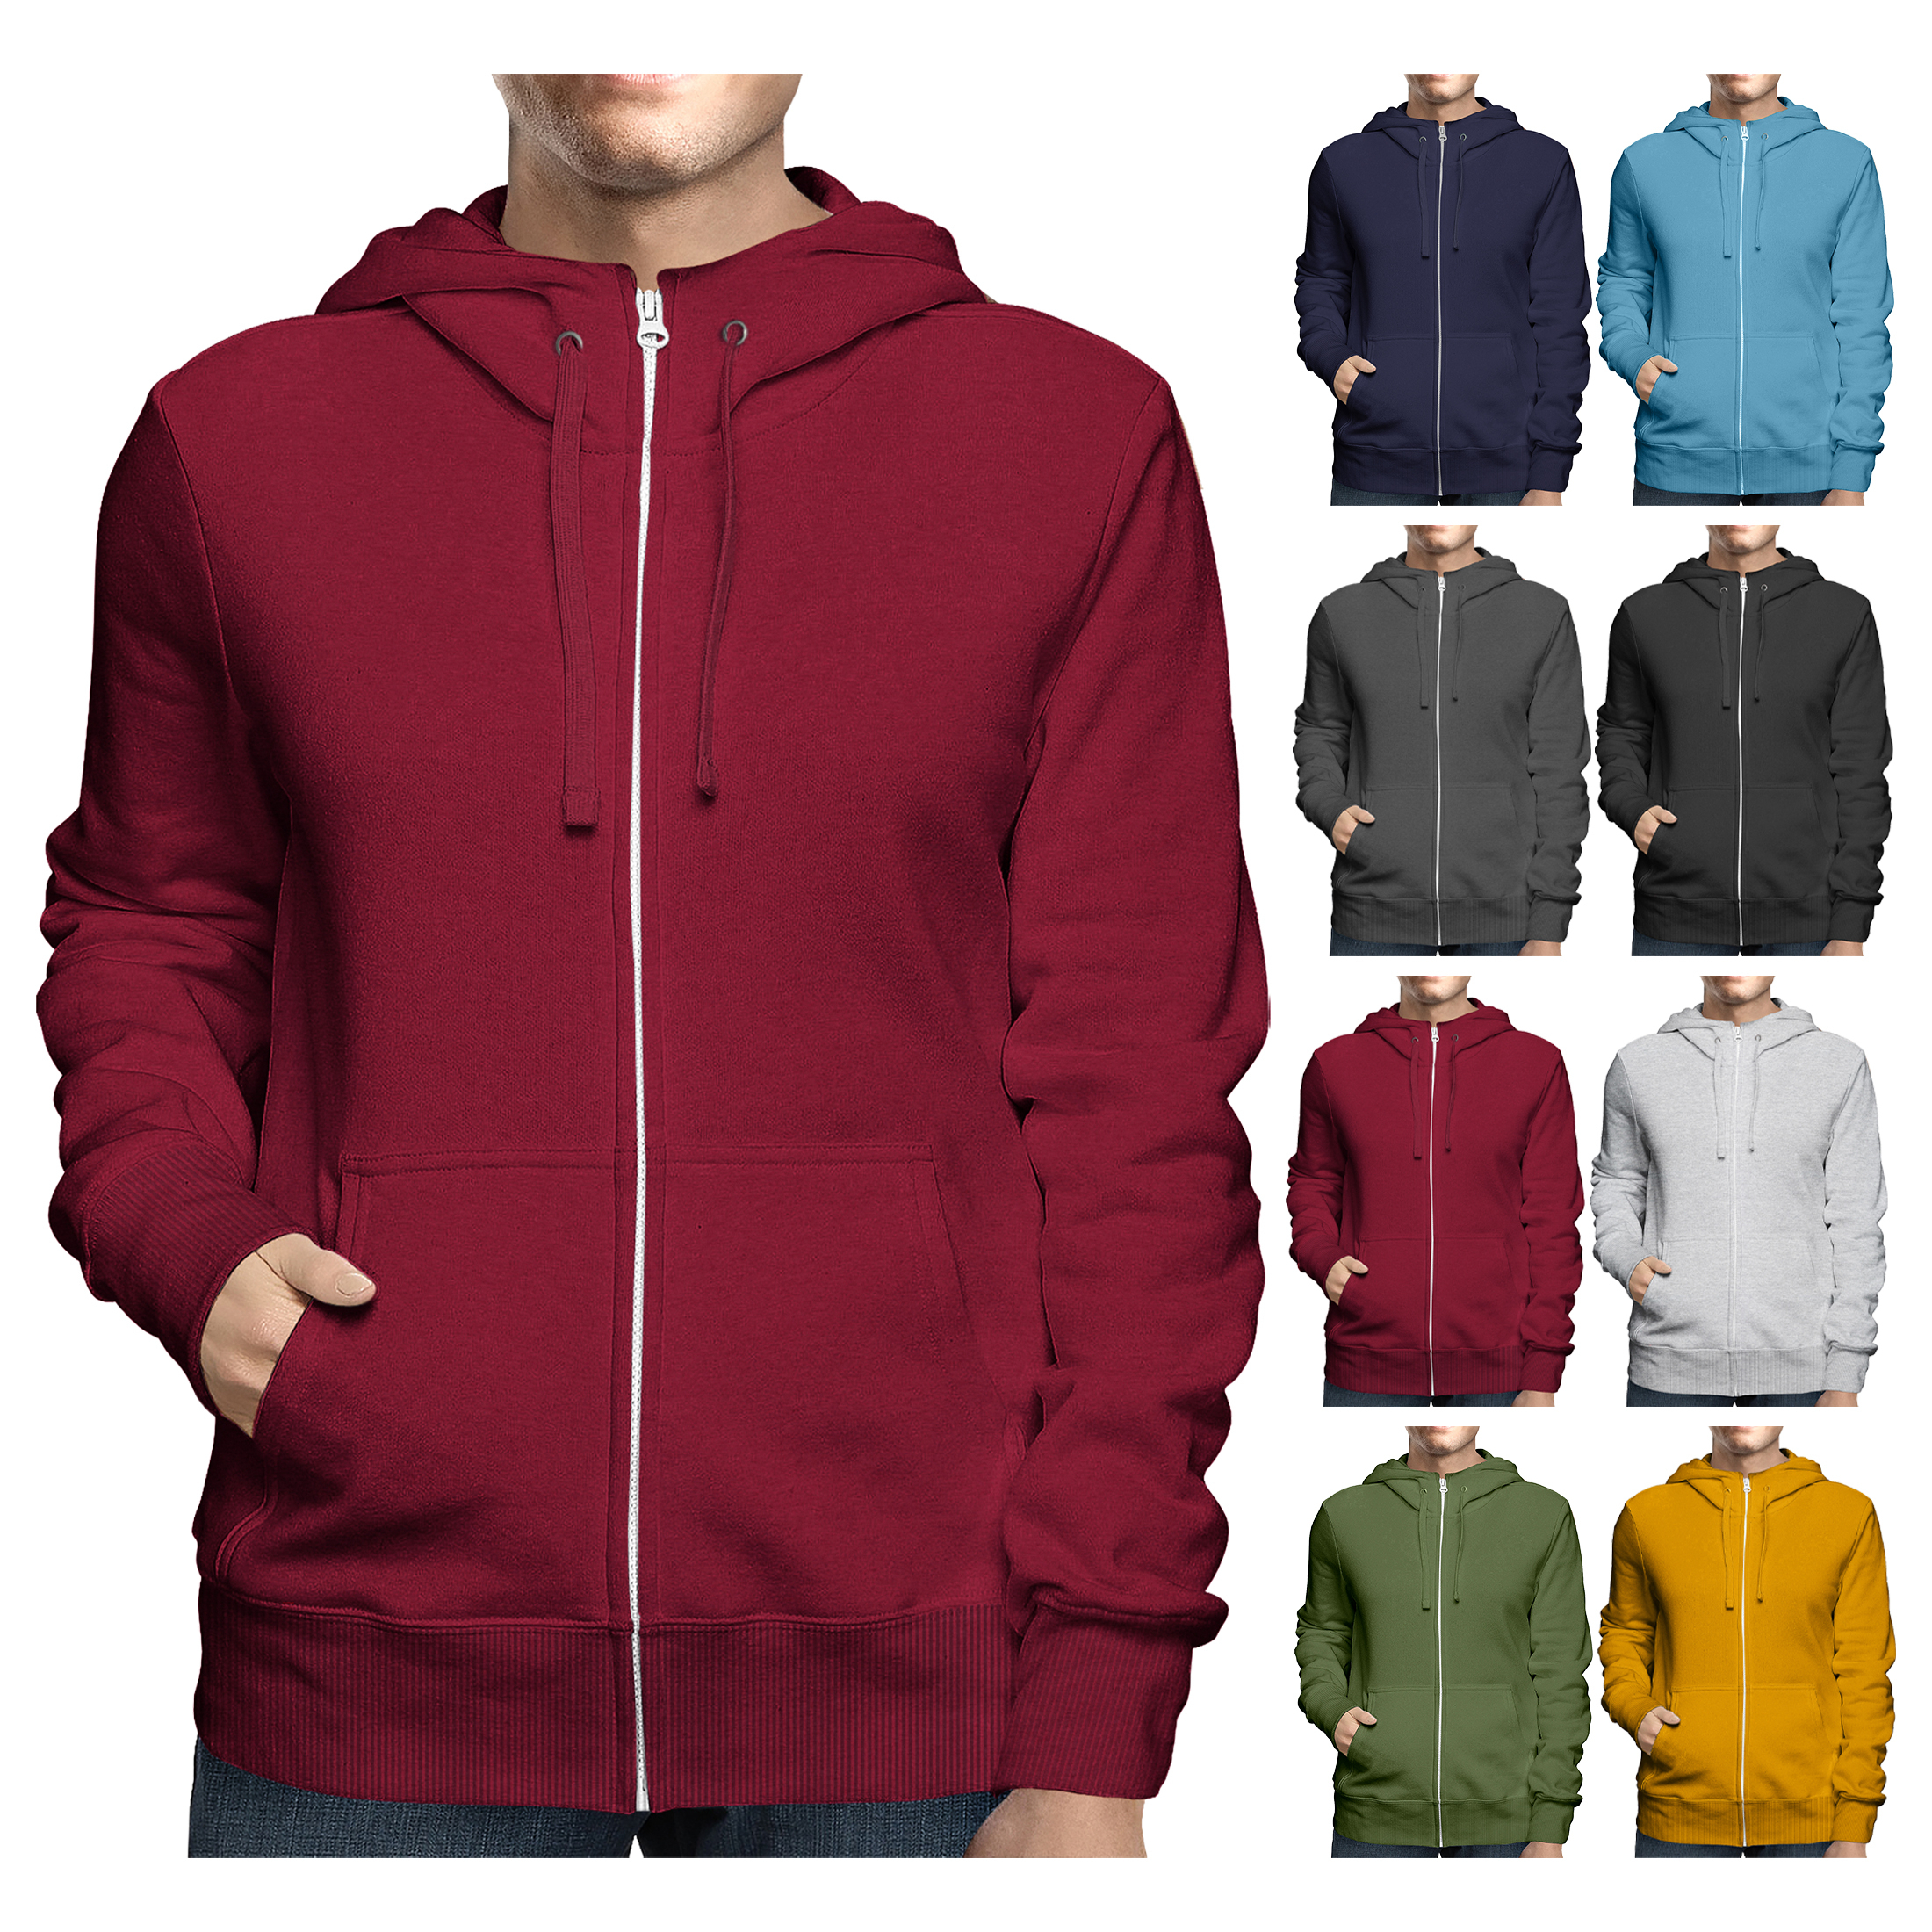 2 Pack: Men's Full Zip Up Fleece-Lined Hoodie Sweatshirt - Large